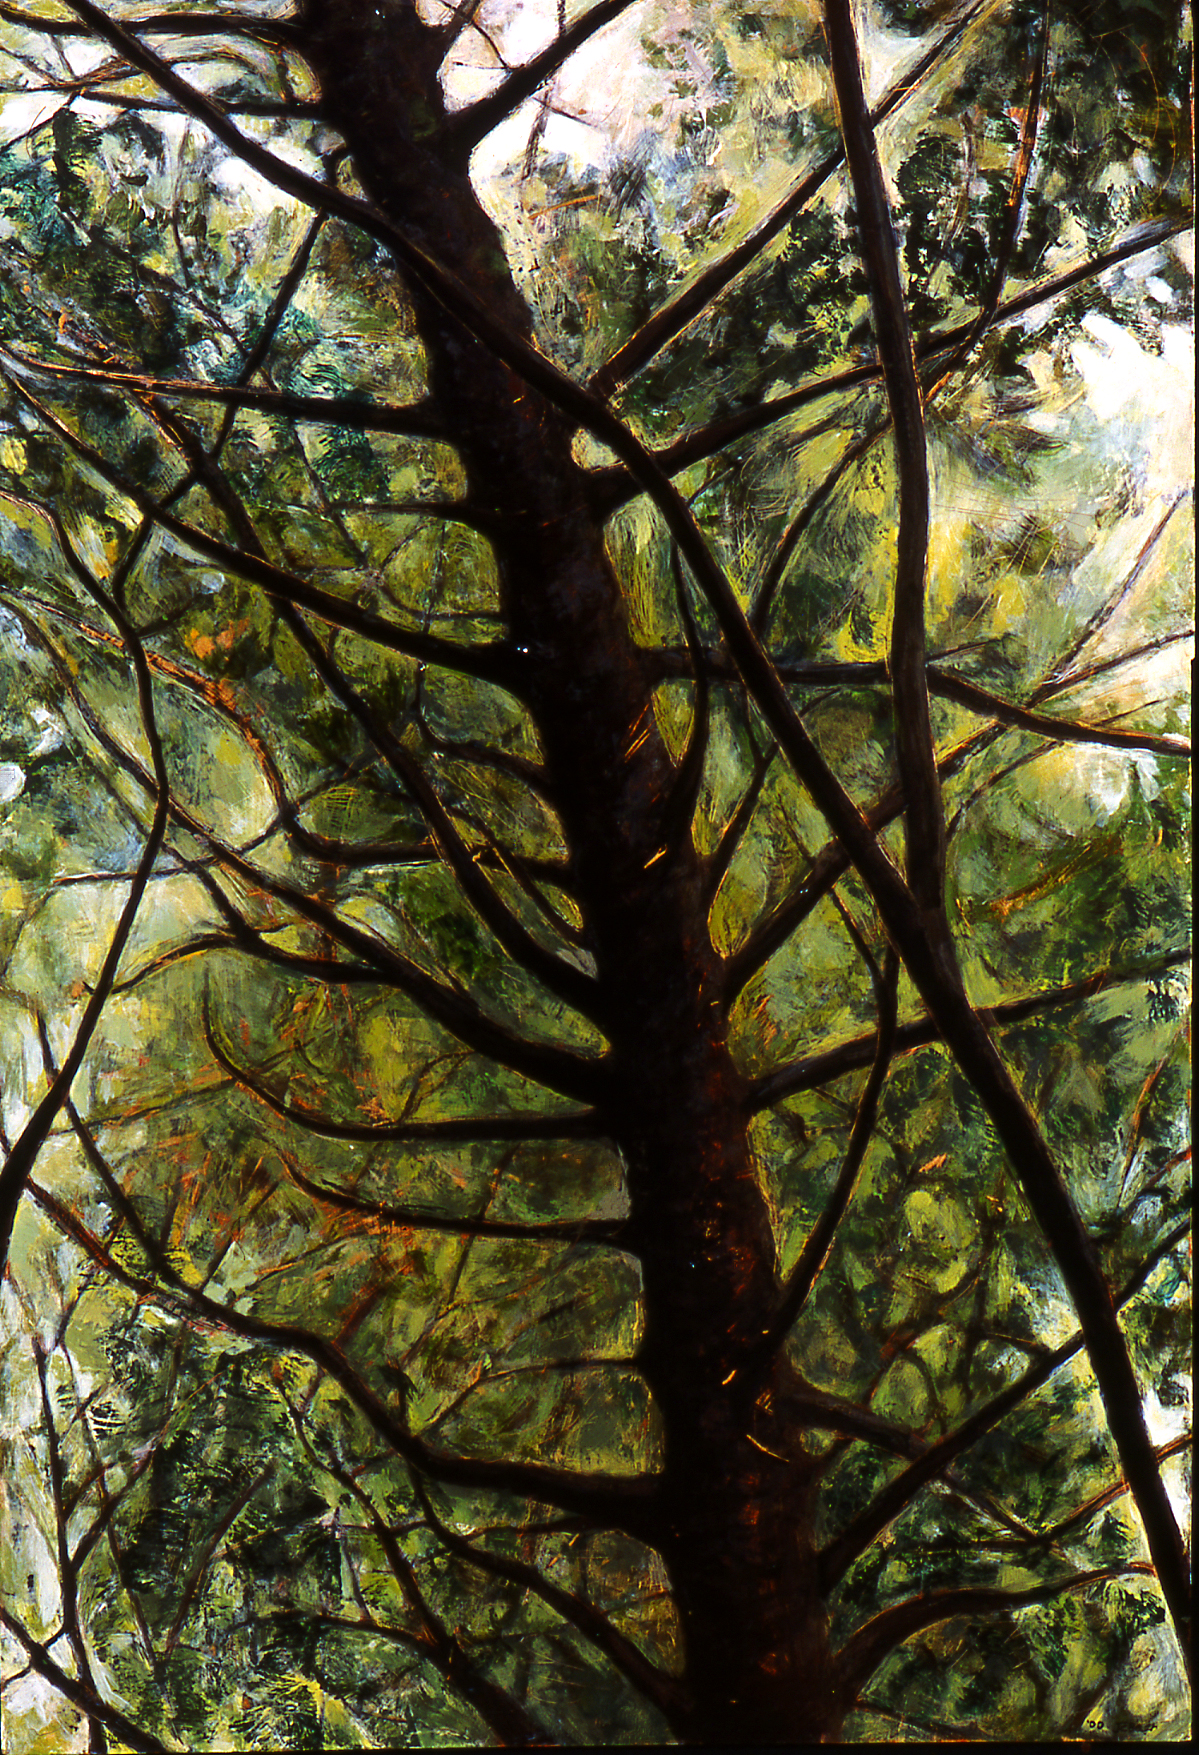 Broadmoor Canopy, MA, 2000, 43 ½ x 29 ¾, acrylic/wood, $2500